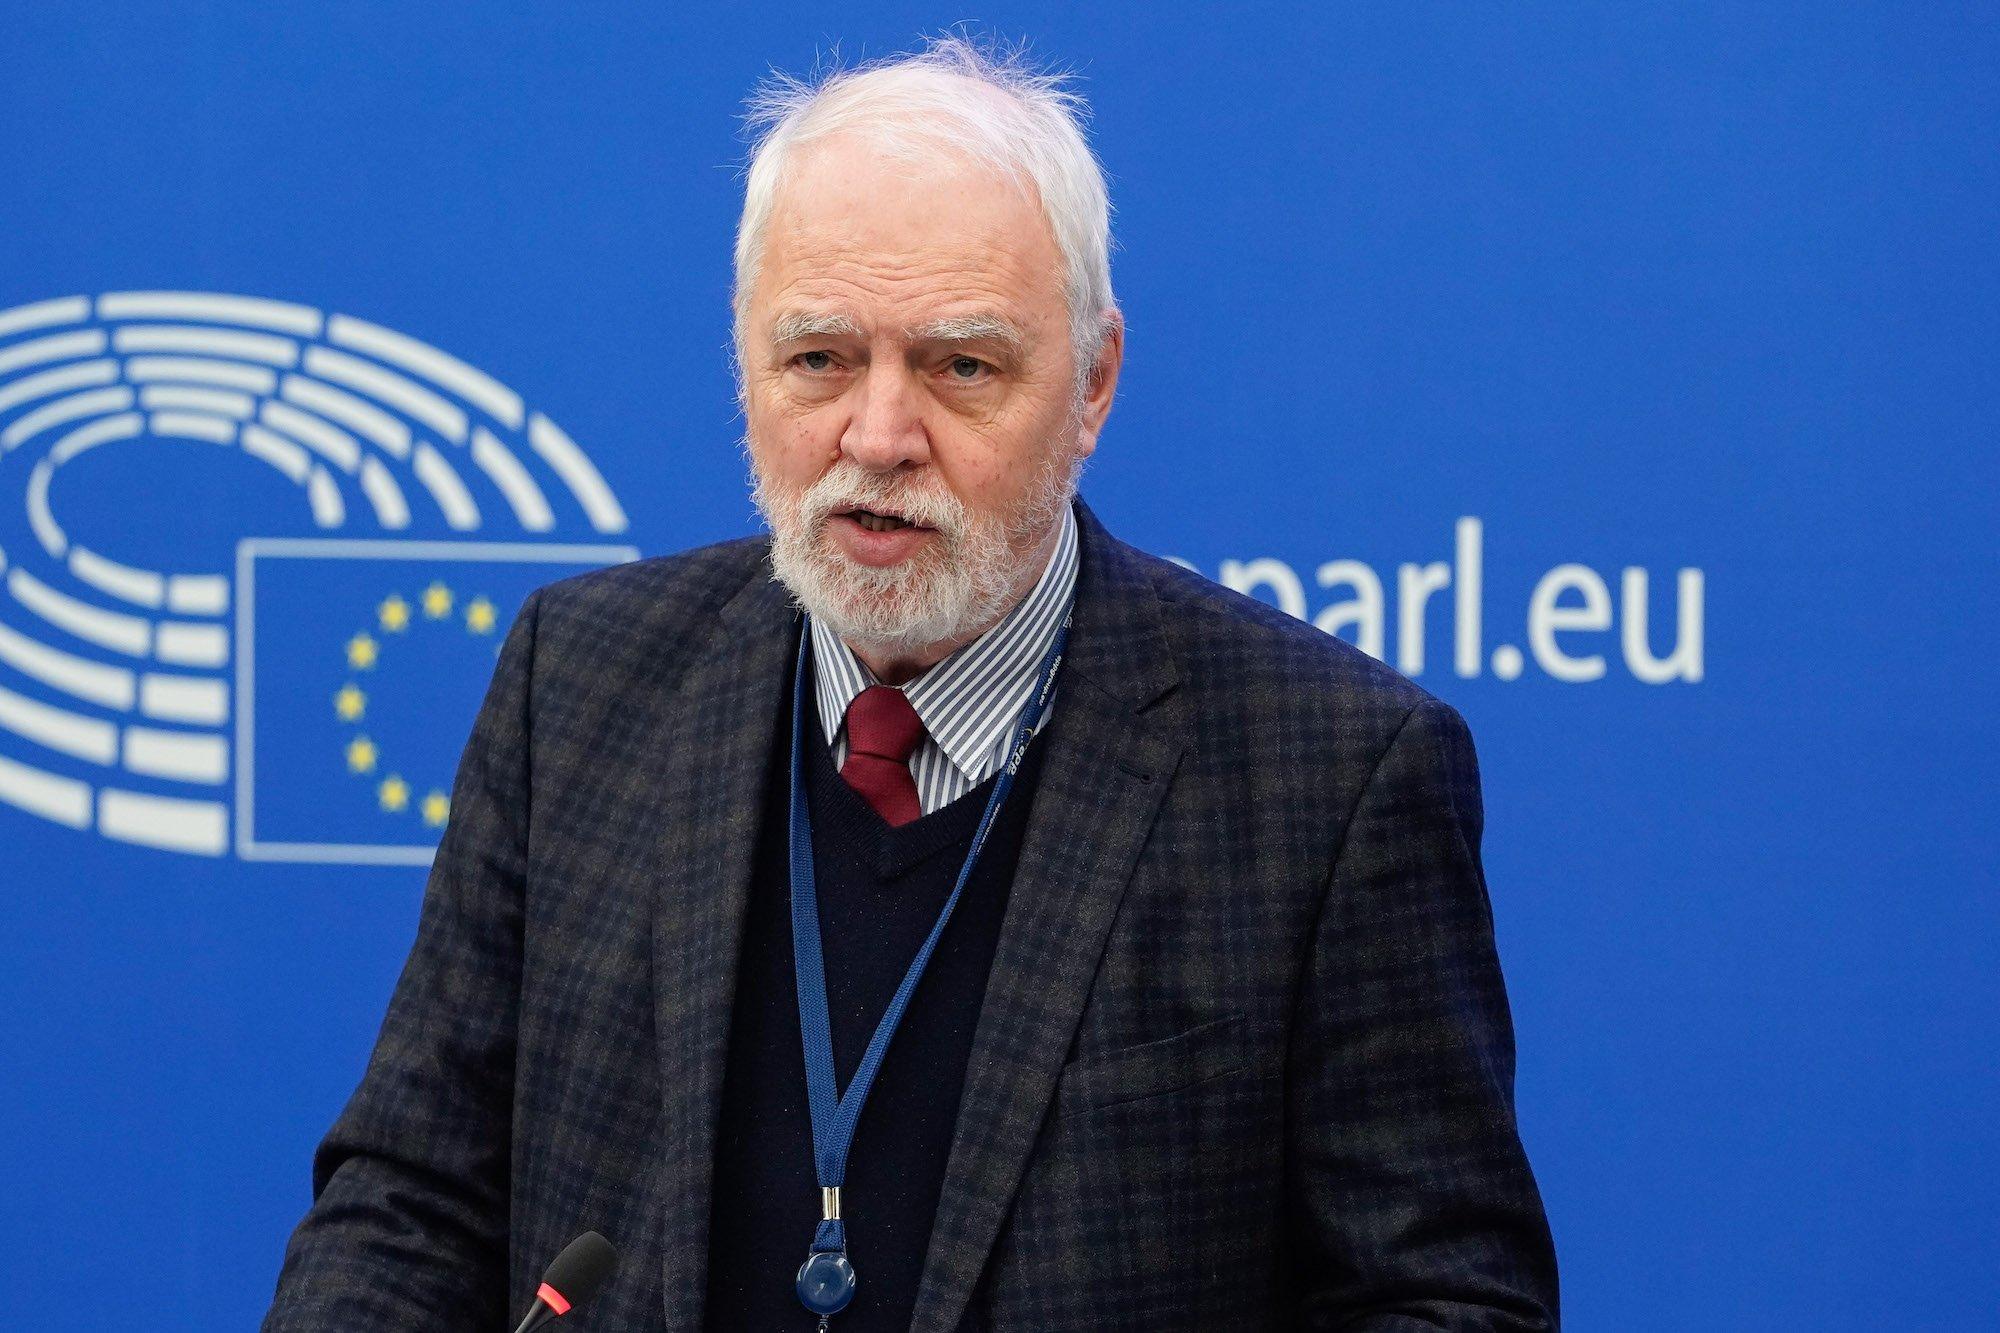 Europoseł PO Jan Olbrycht przemawia w Parlamencie Europejskim. To siwy mężczyzna z siwą brodą obrany w kraciastą marynarkę i bordowy krawat.